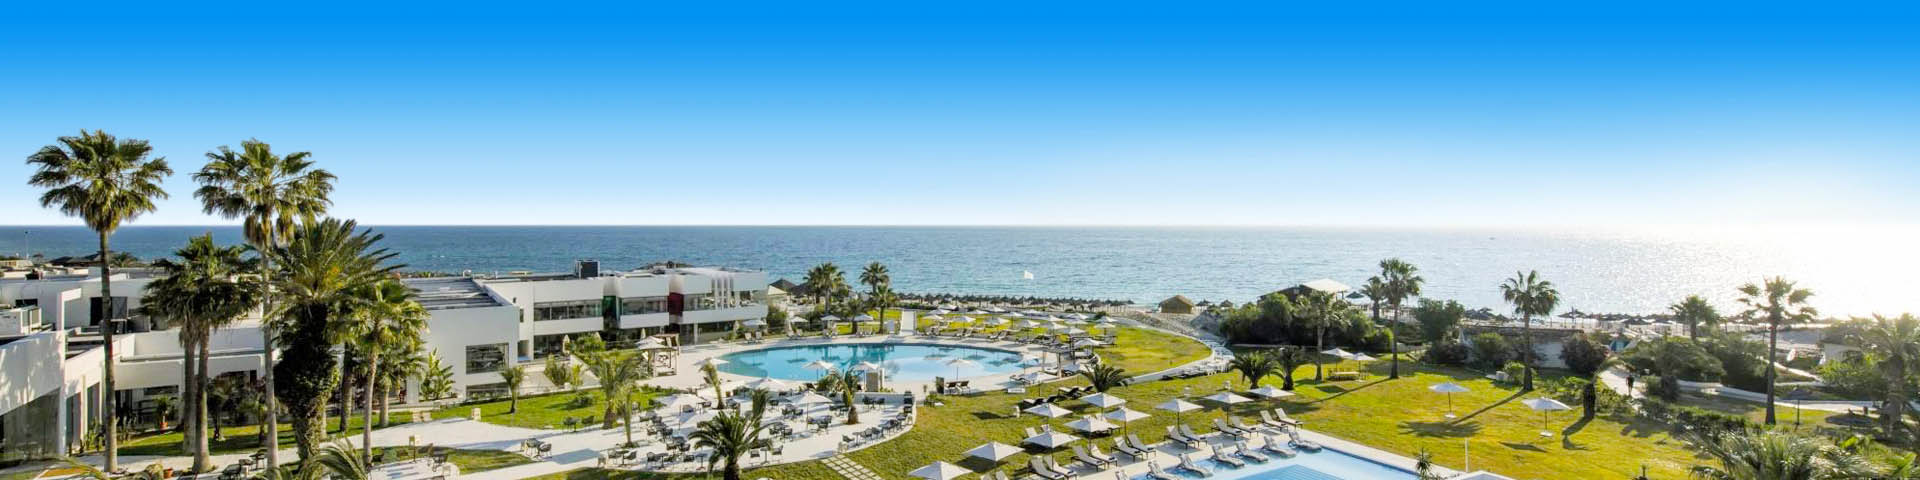 Hotel met grote groene ligweide en zwembad in Tunesië